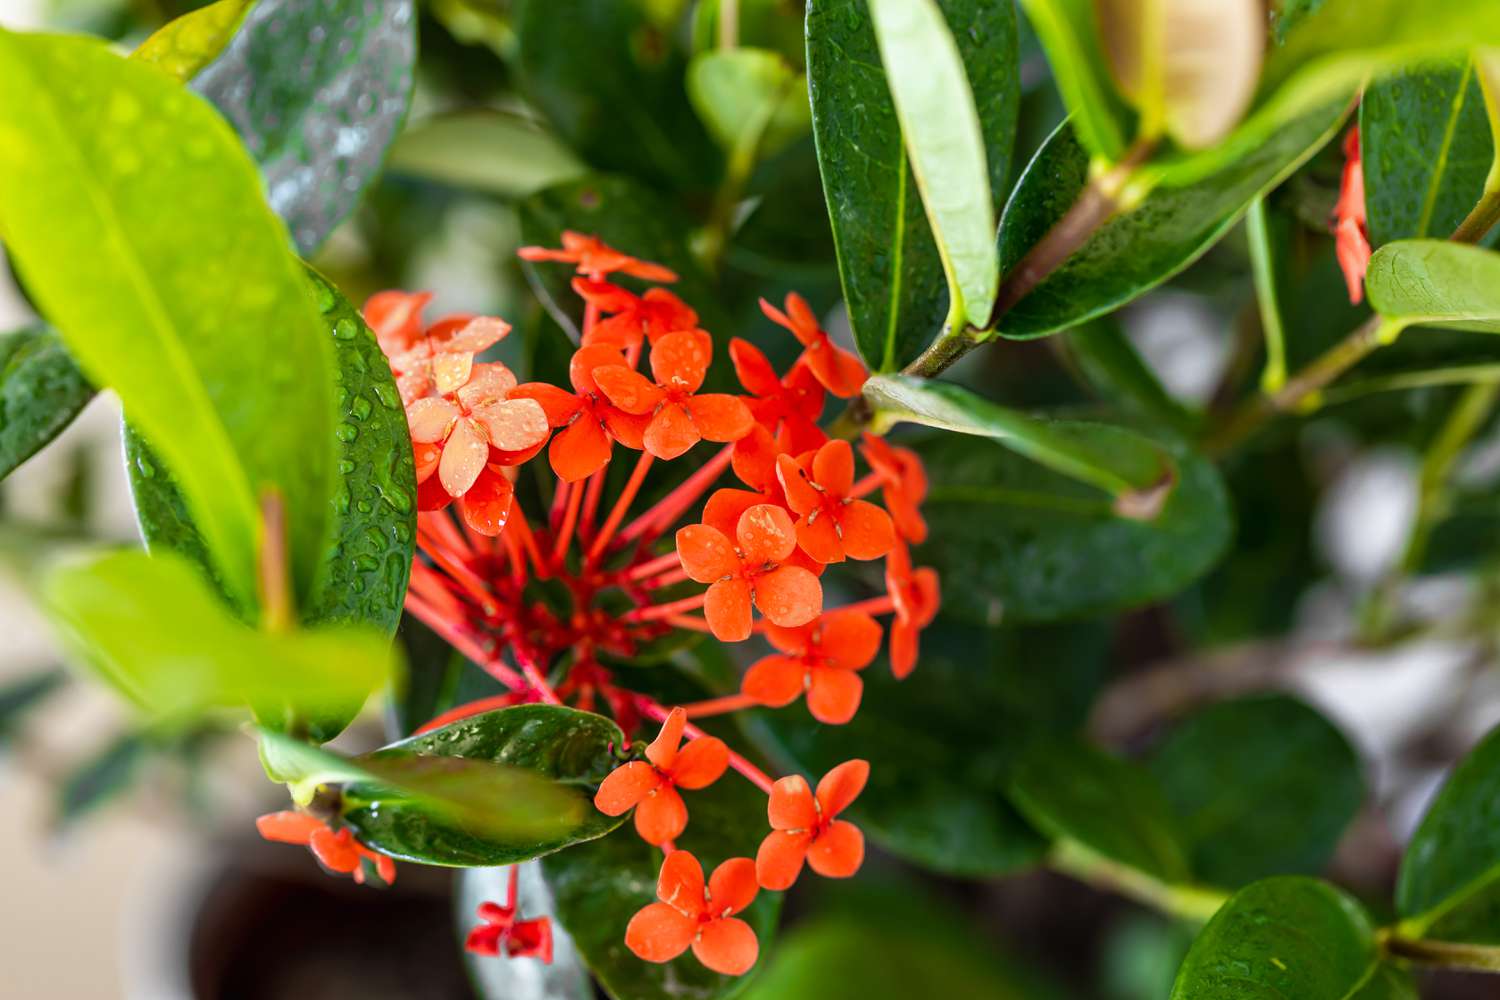 Ixora-Pflanze mit roten Blüten in Nahaufnahme